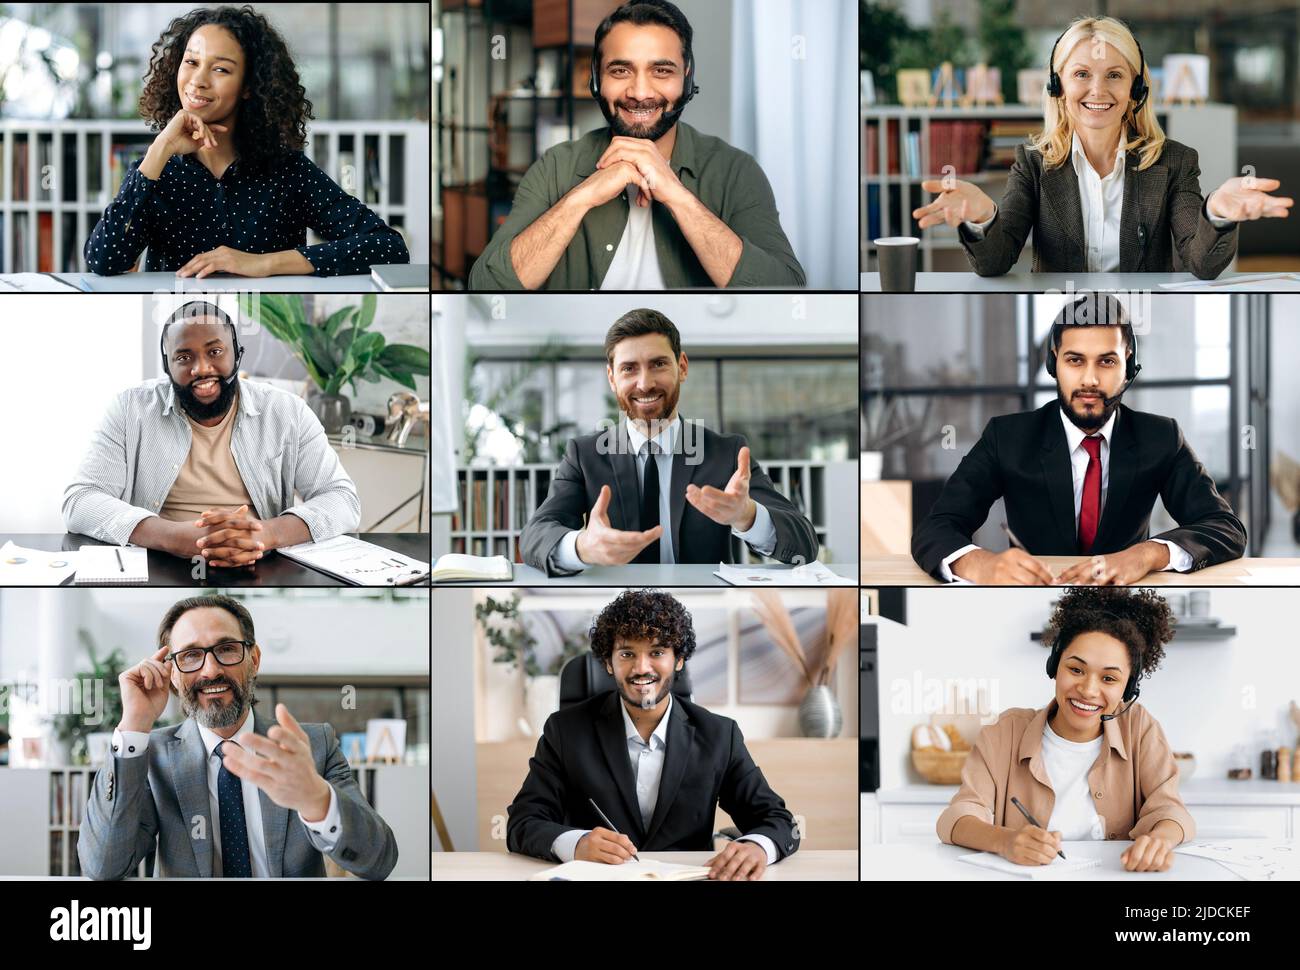 Diversity People Konzept. Mosaikcollage einer multirassischen Gruppe erfolgreicher lächelnder Männer und Frauen, unterschiedlichen Alters, die unterschiedliche Emotionen ausdrücken, die auf die Kamera schauen Stockfoto